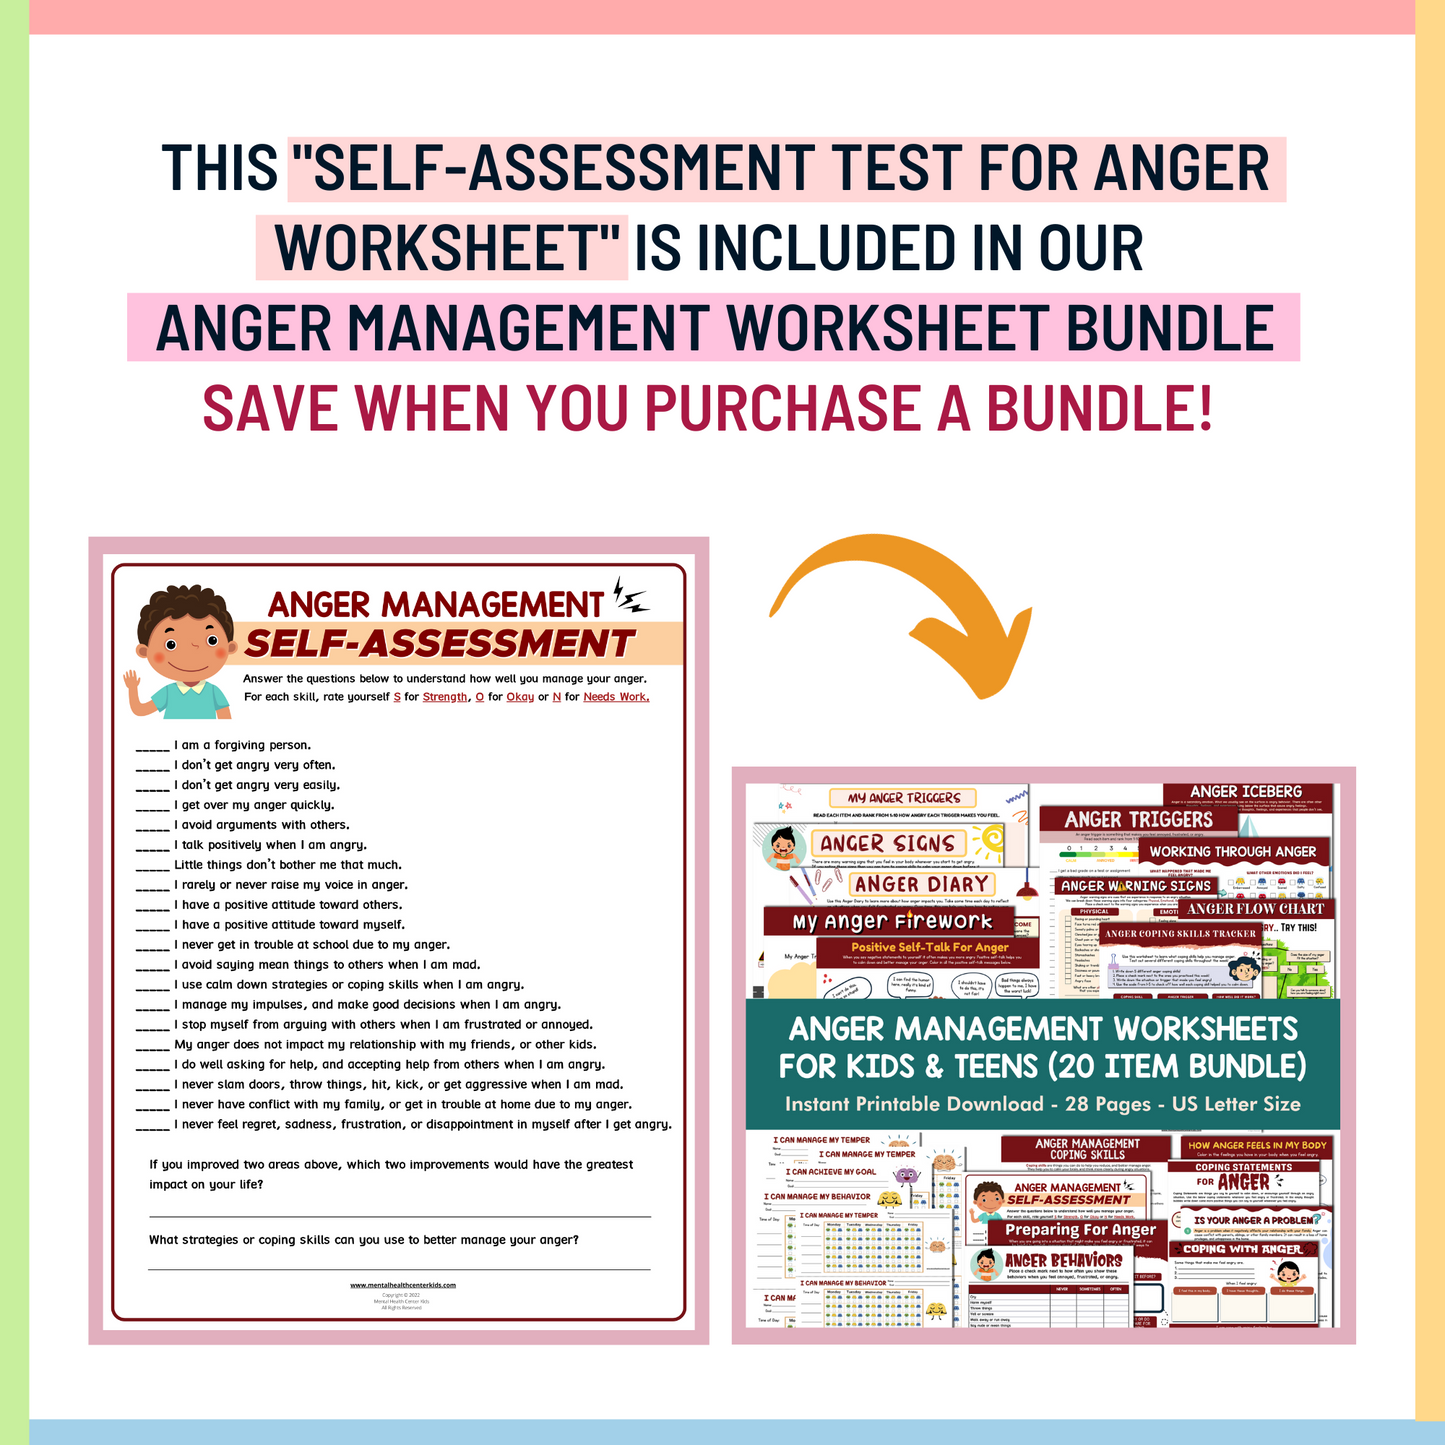 Self-Assessment Test for Anger